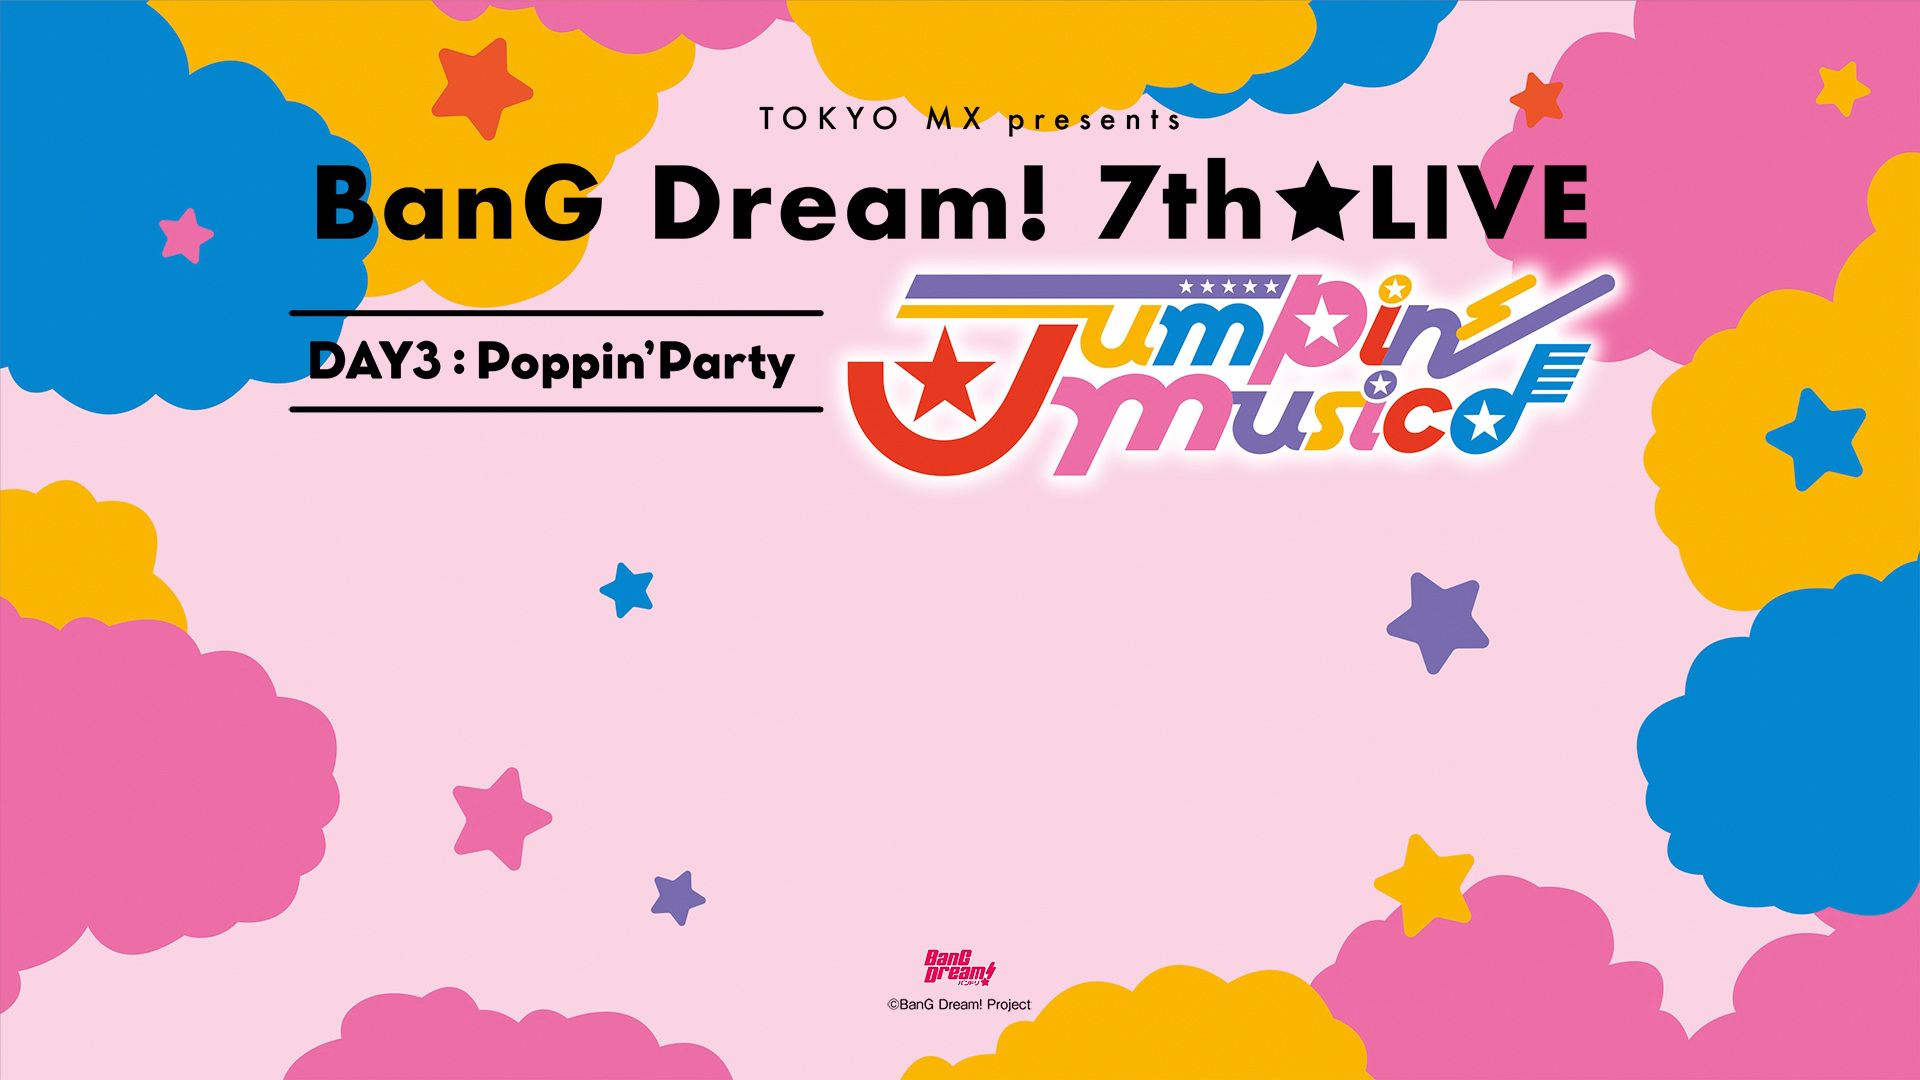 [TD-RAWS] BanG Dream! 7th☆LIVE DAY3 Poppin’Party「Jumpin’ Music♪」  [BDRip 1080p HEVC-10bit FLAC]插图icecomic动漫-云之彼端,约定的地方(´･ᴗ･`)